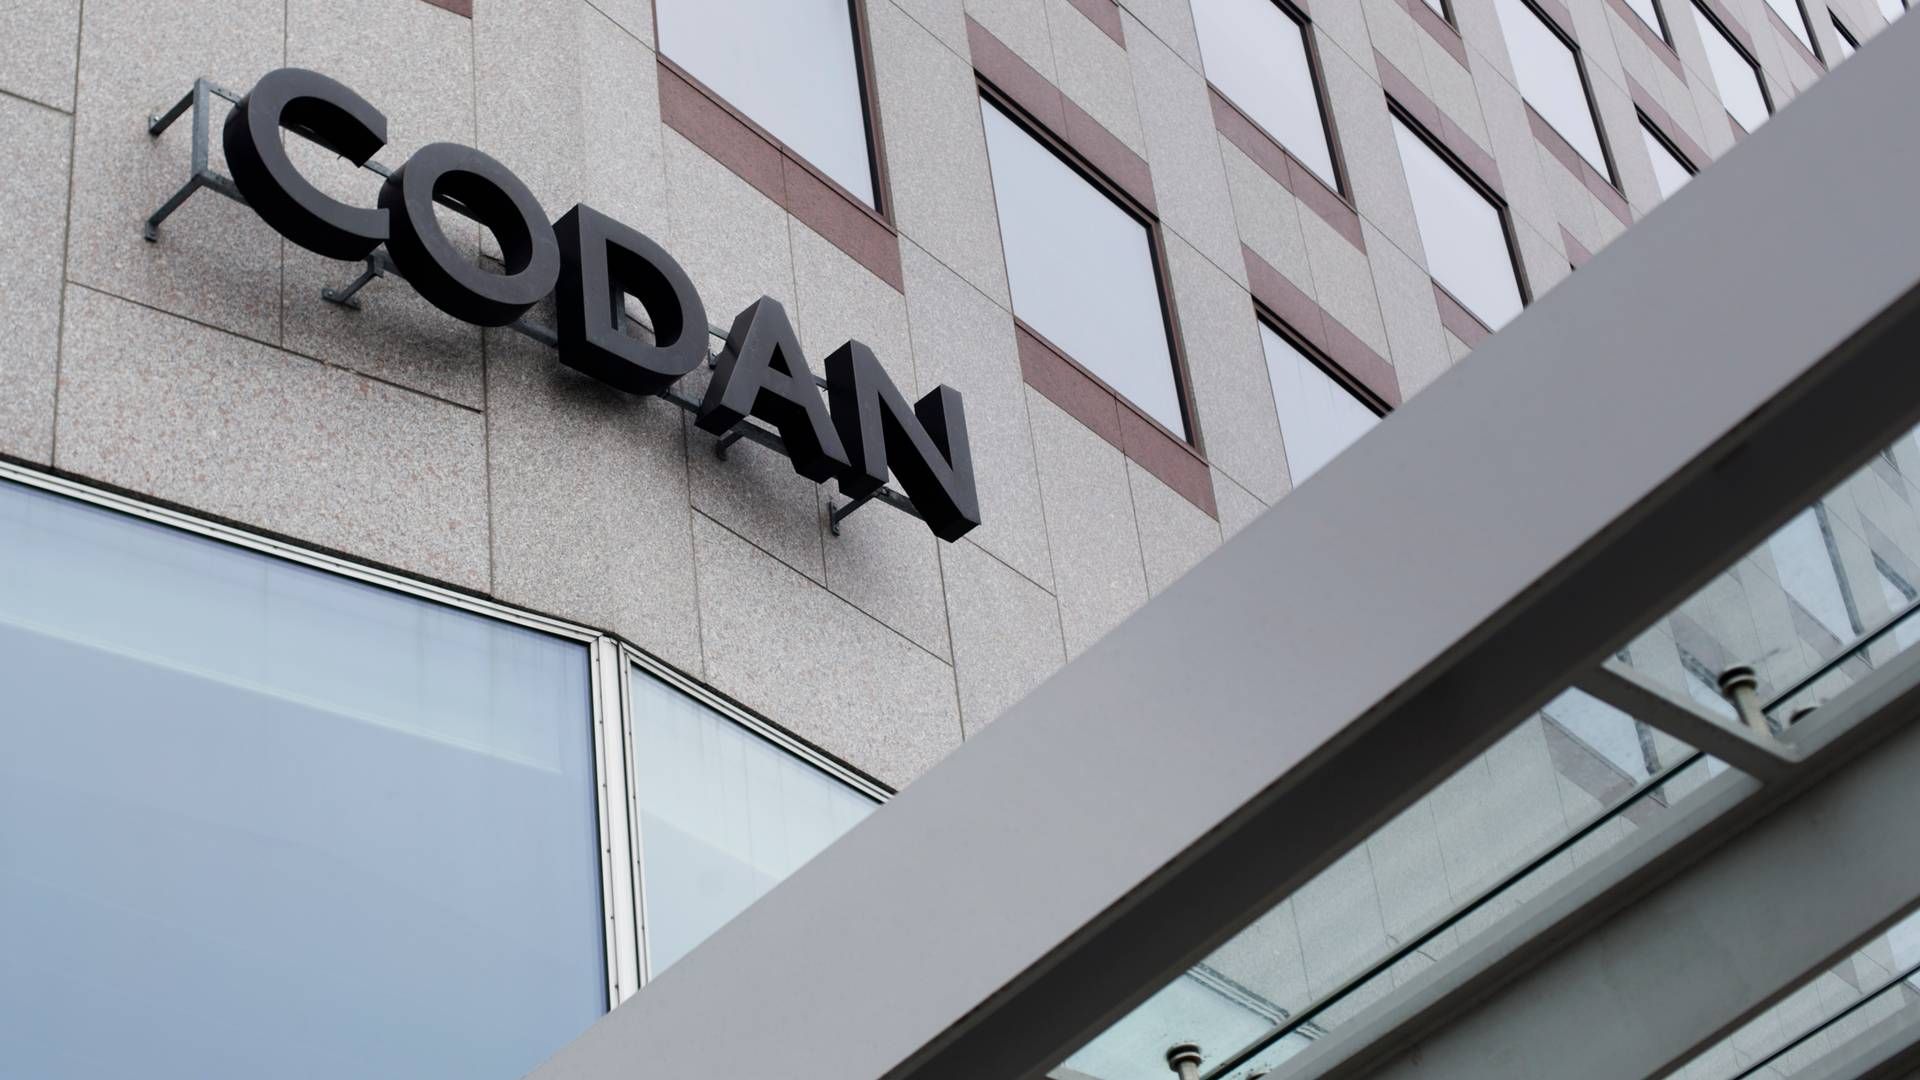 Codan blev i 2022 købt af Alm. Brand i en handel til 12,6 mia. kr. | Foto: Mathias Svold